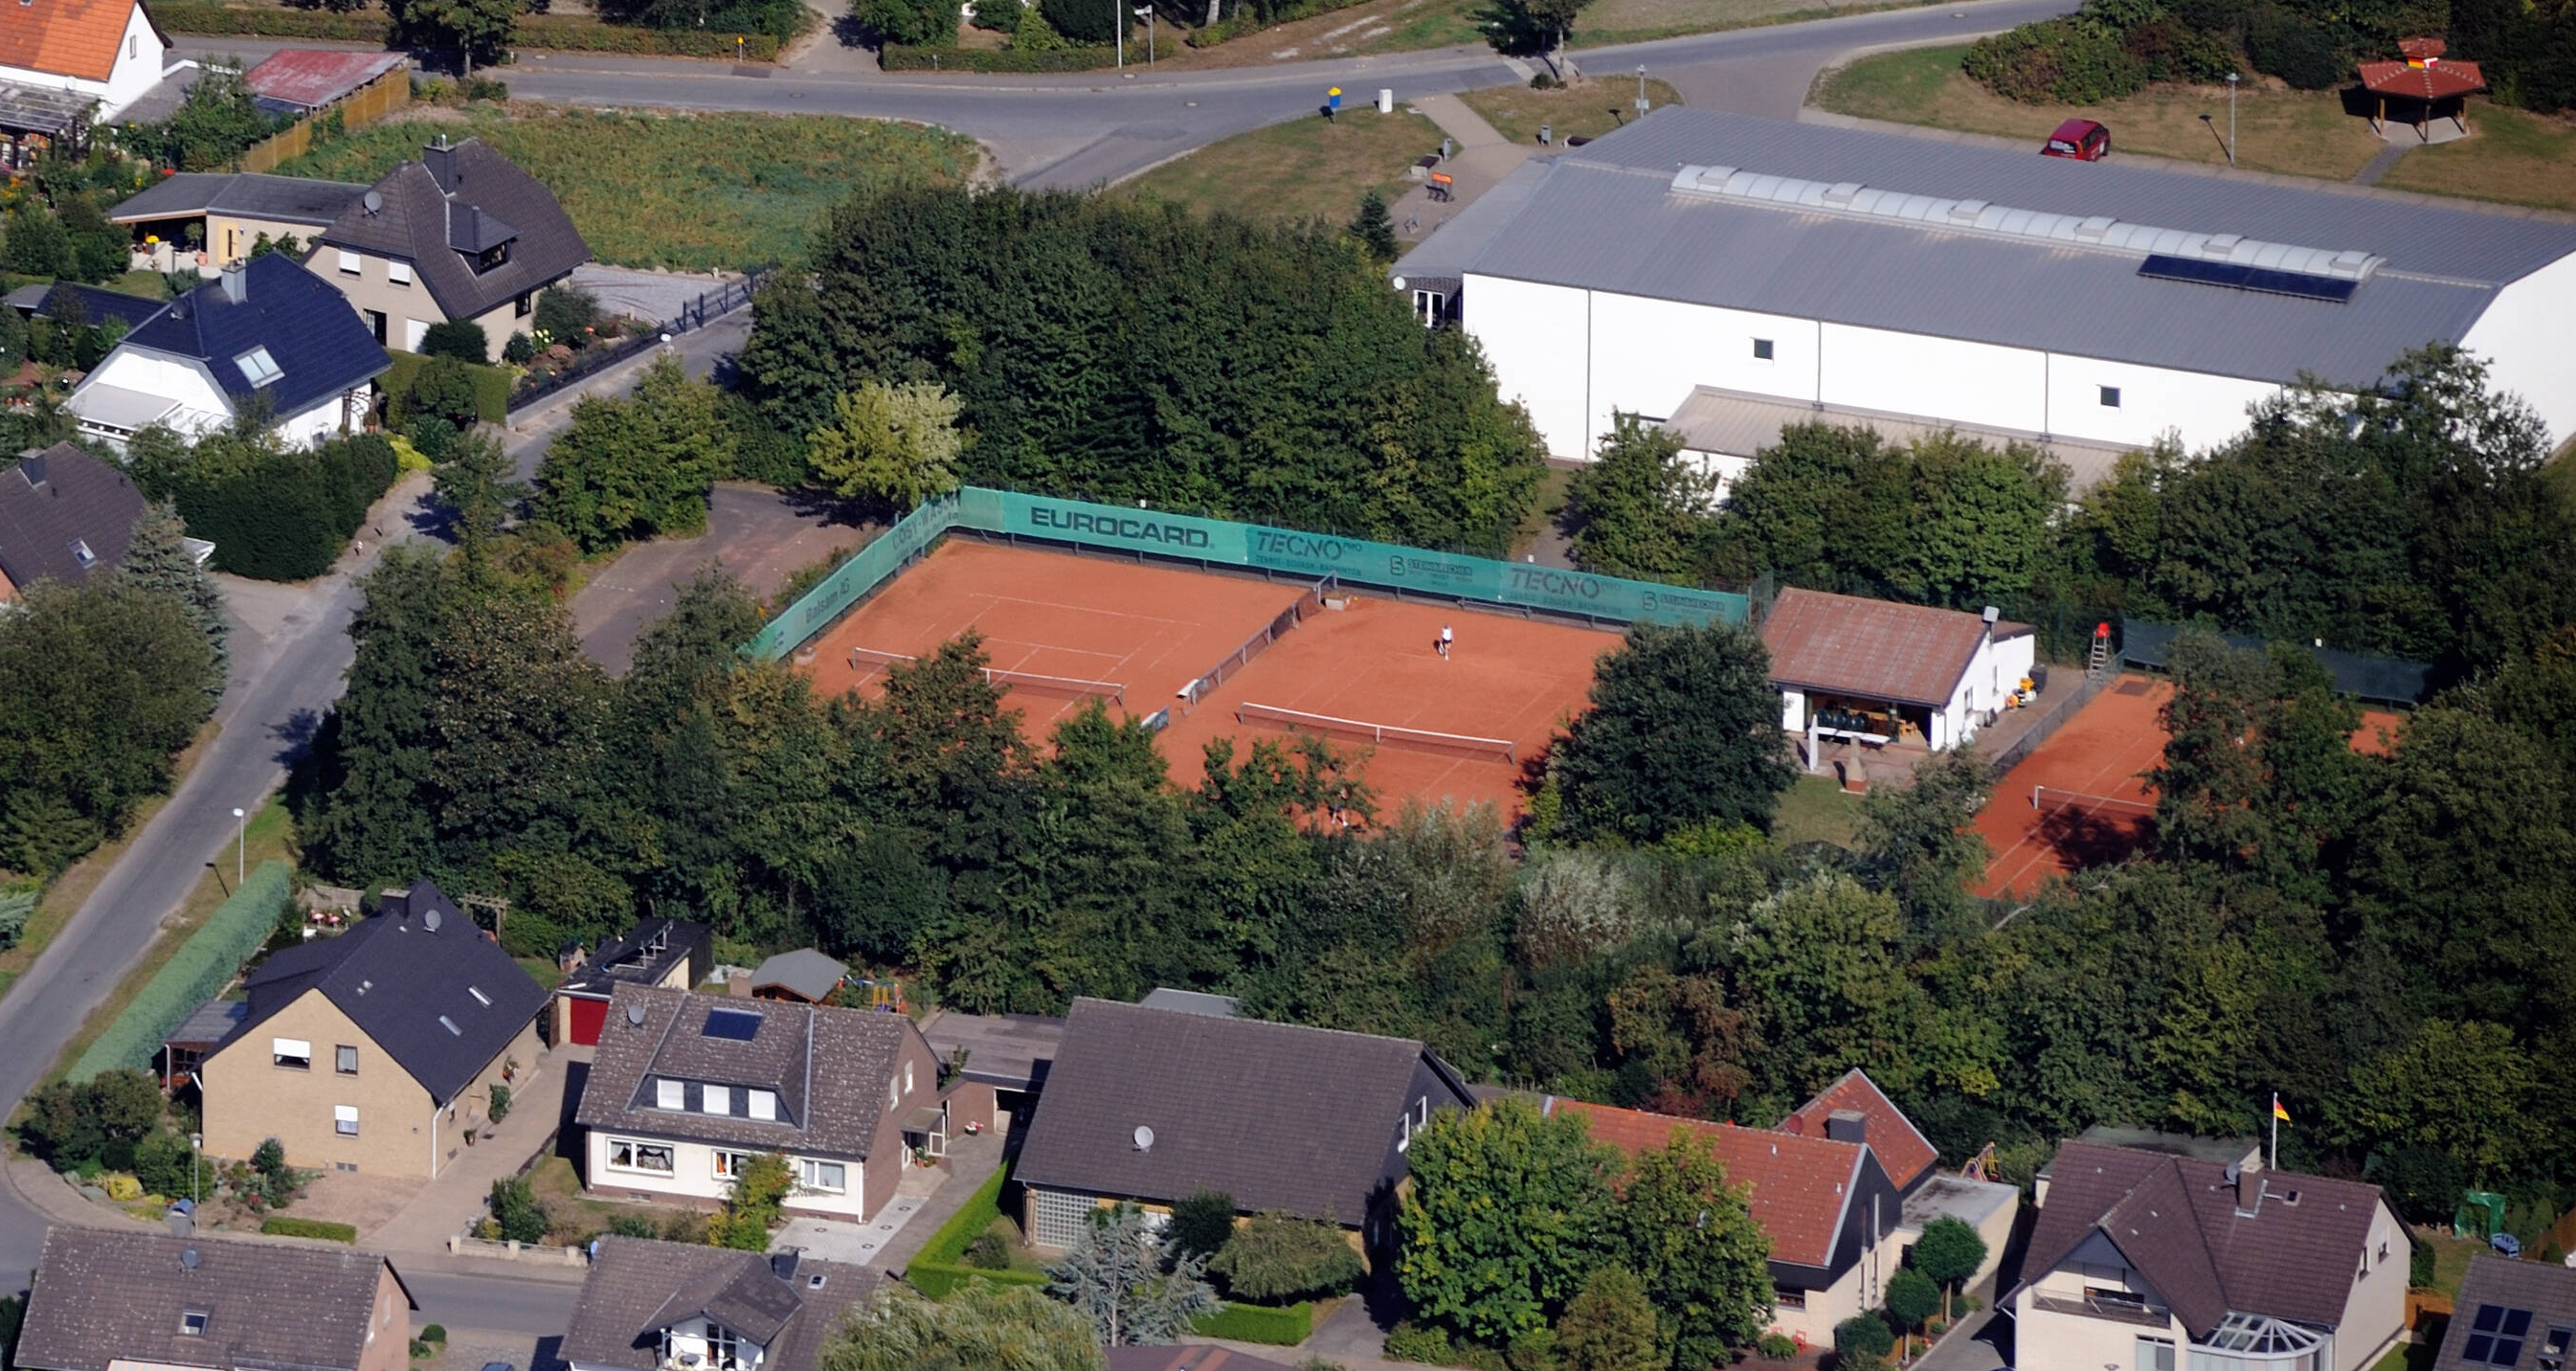 Tennisaußenplätze in Melle-Eicken-Bruche